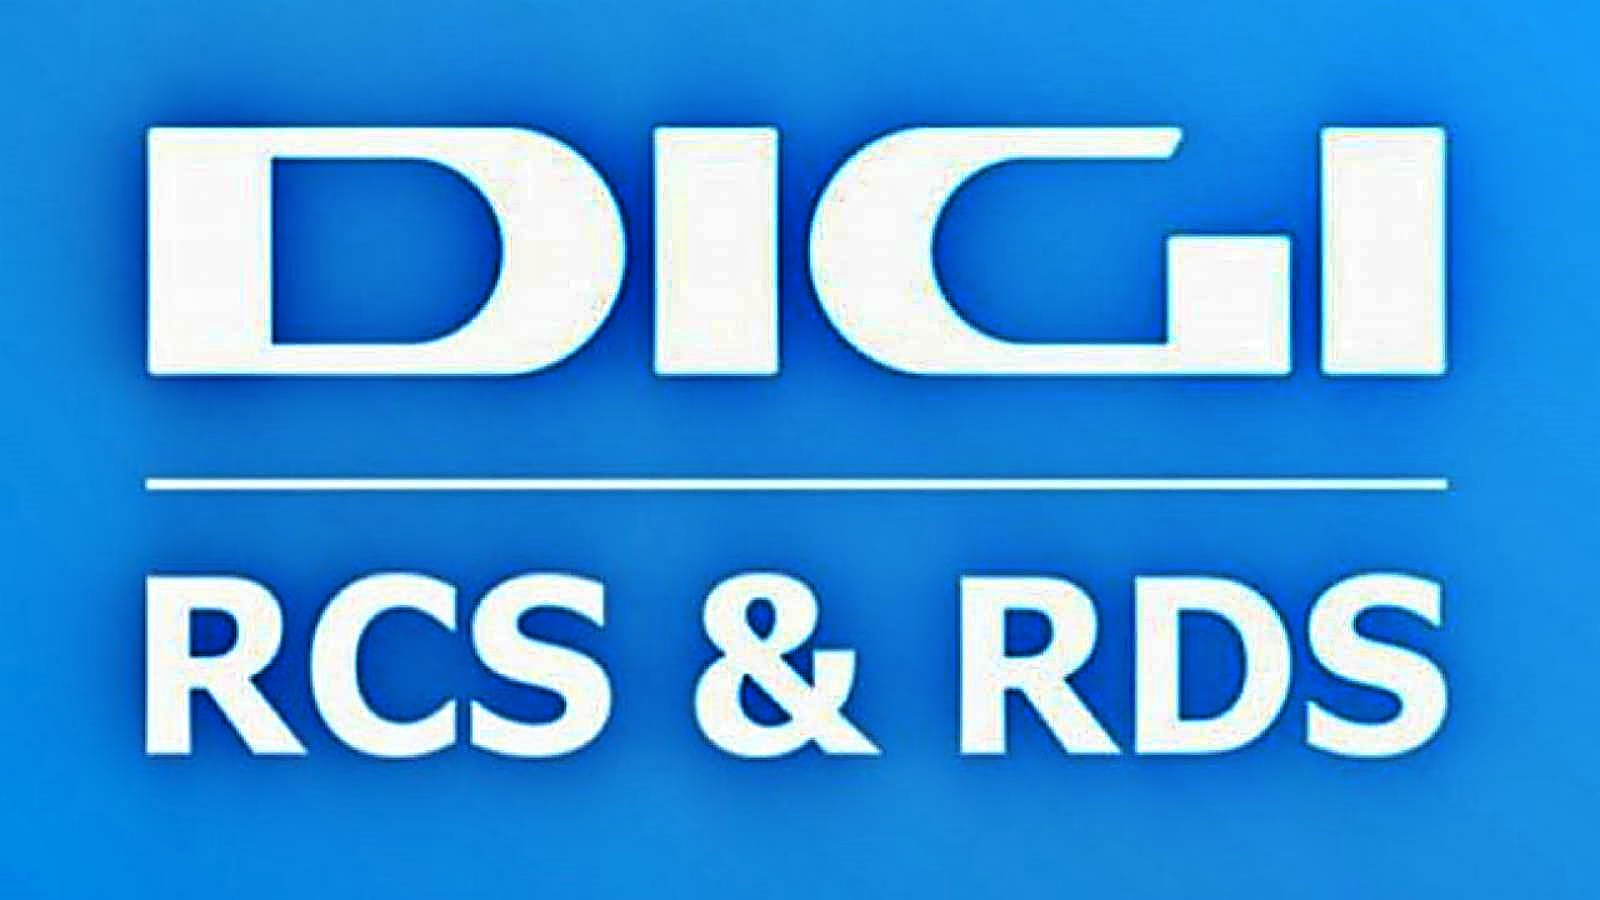 DIGI RCS & RDS finale de l'Open d'Australie 2023 tv 4k